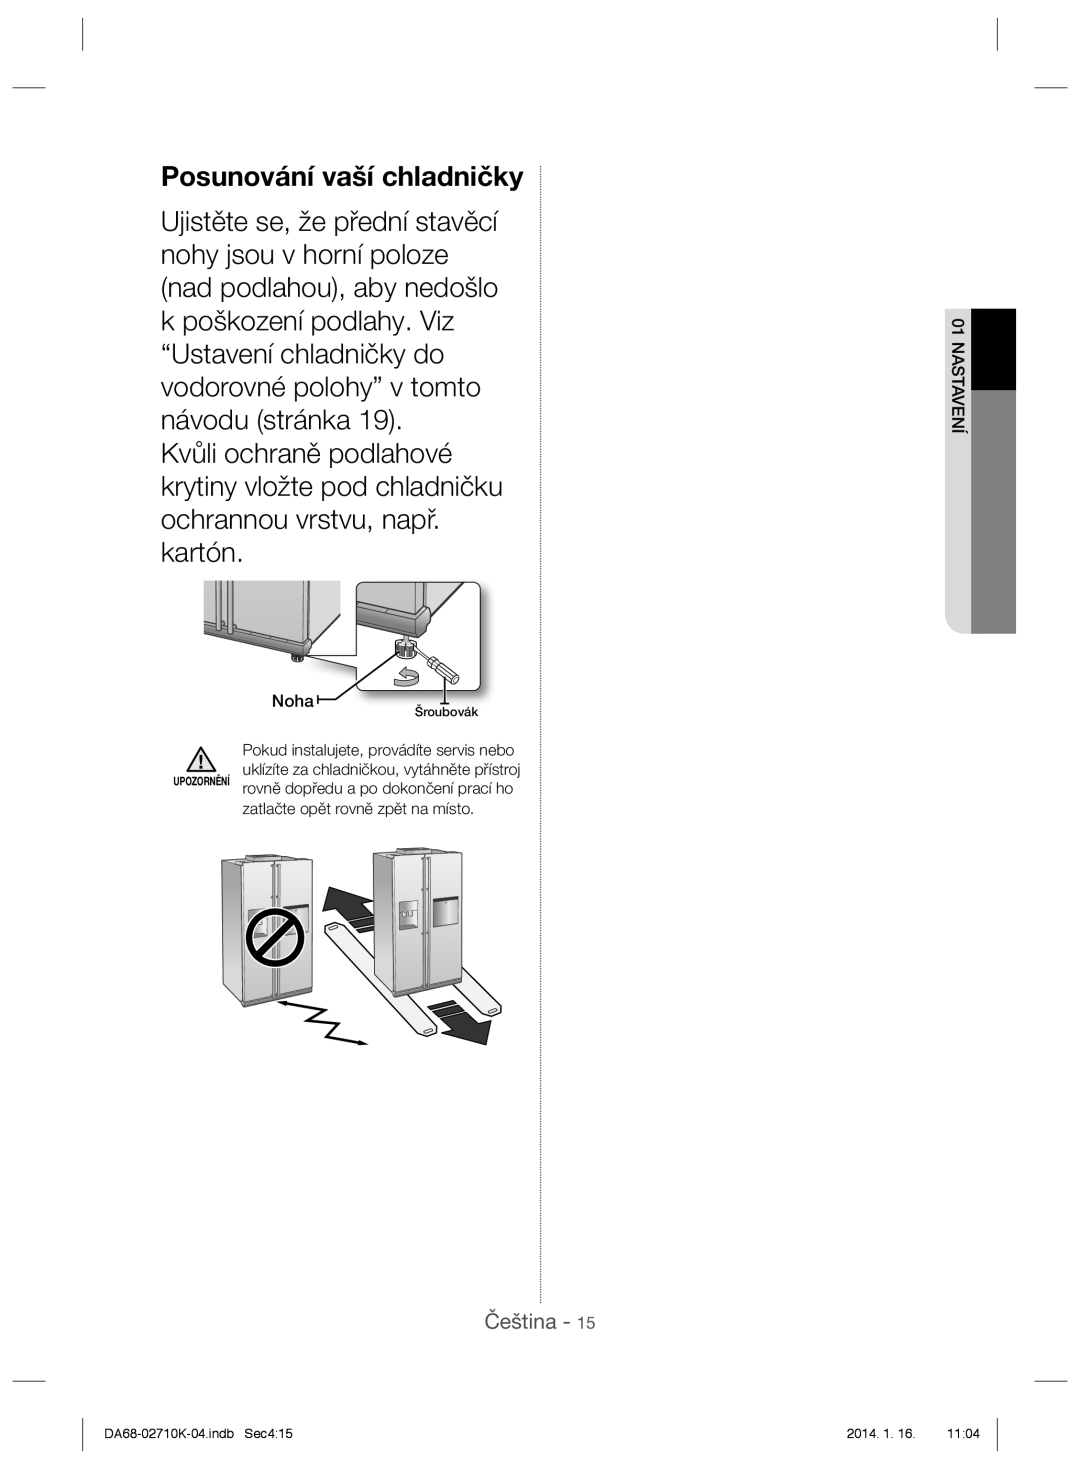 Samsung RS7557BHCSP/EF manual Posunování vaší chladničky, Noha, Pokud instalujete, provádíte servis nebo, Nastavení 